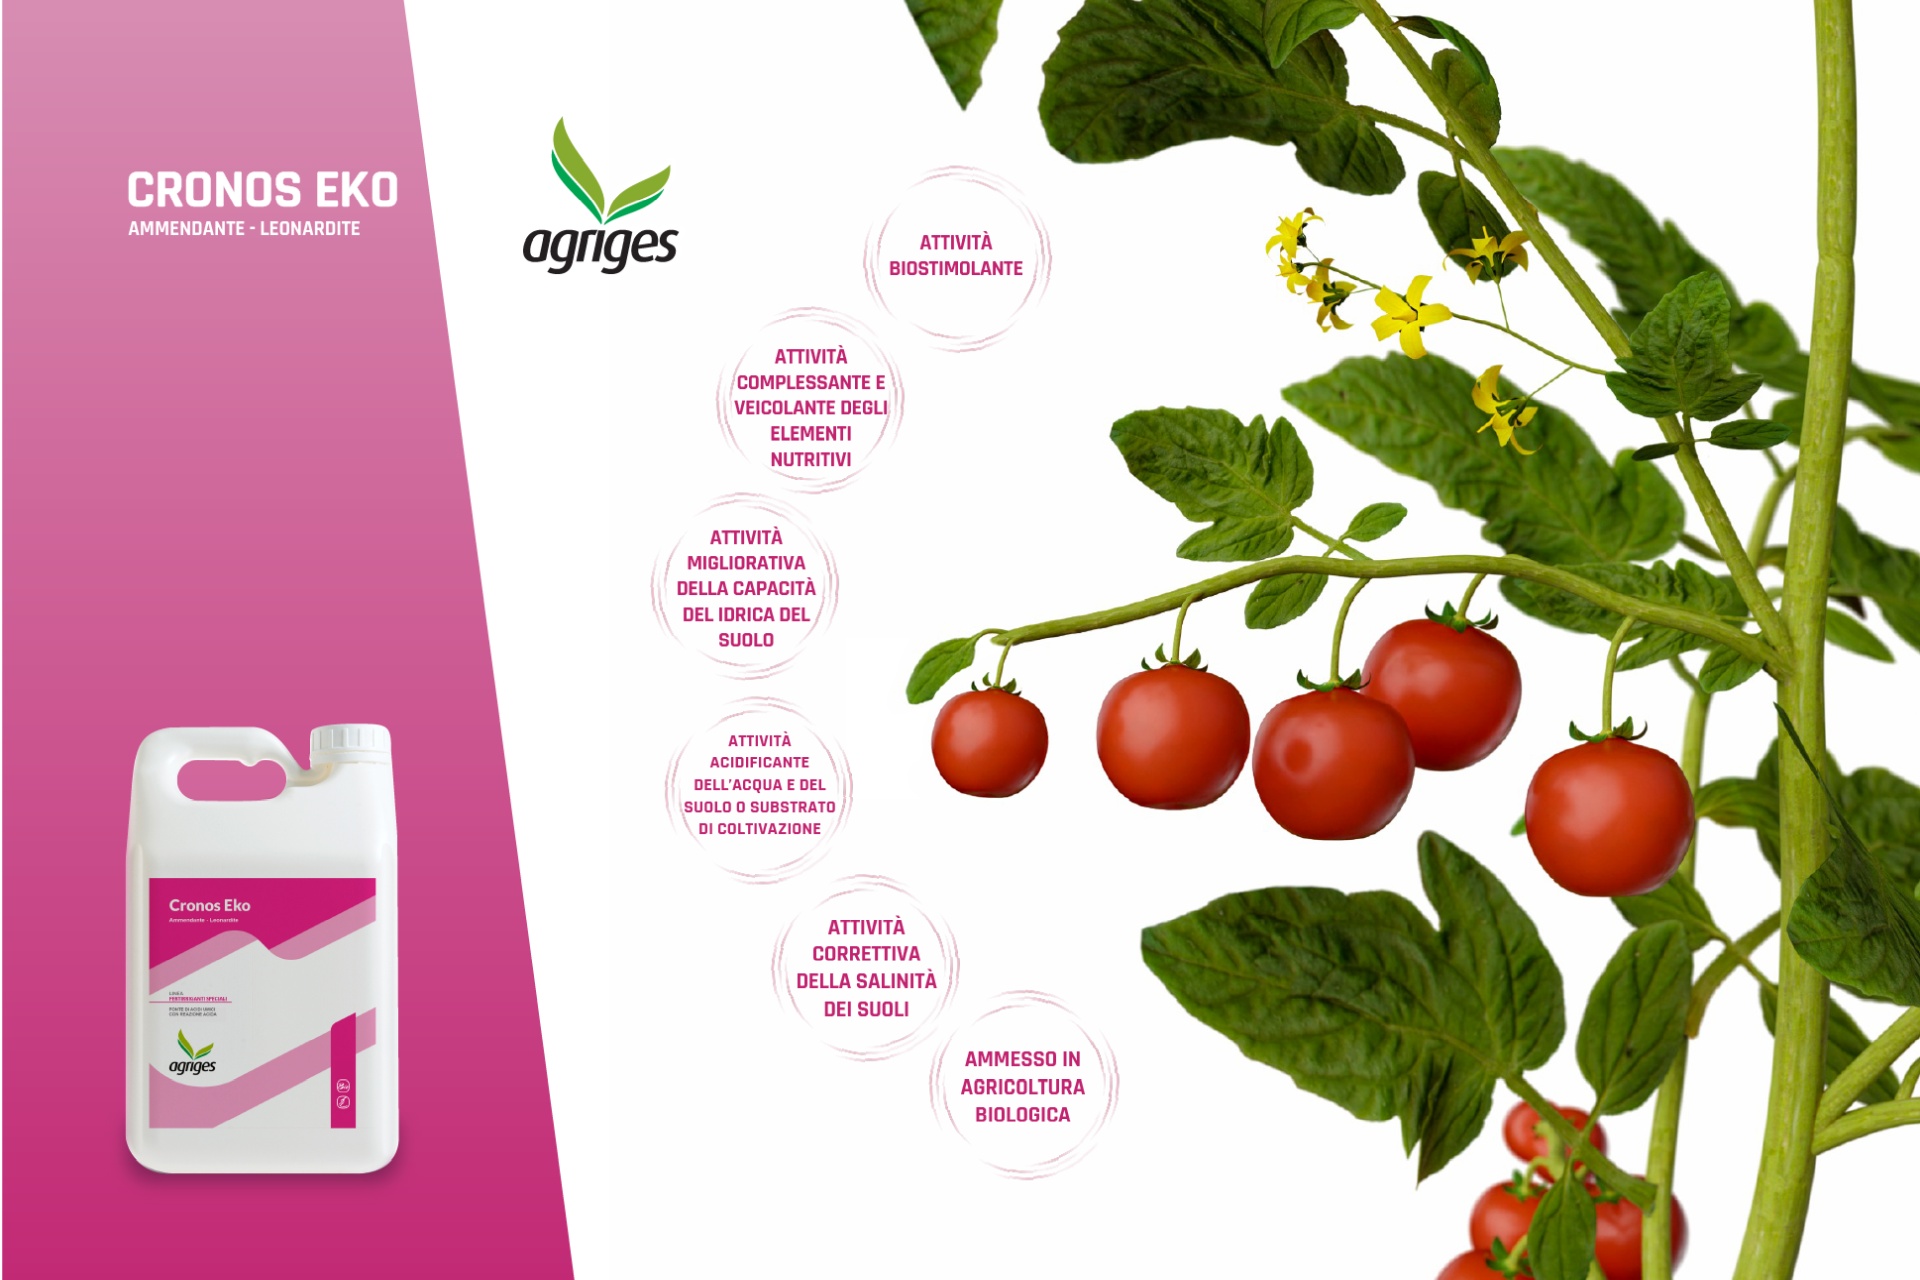 Agriges, un evento web para presentar el nuevo producto: Cronos Eko